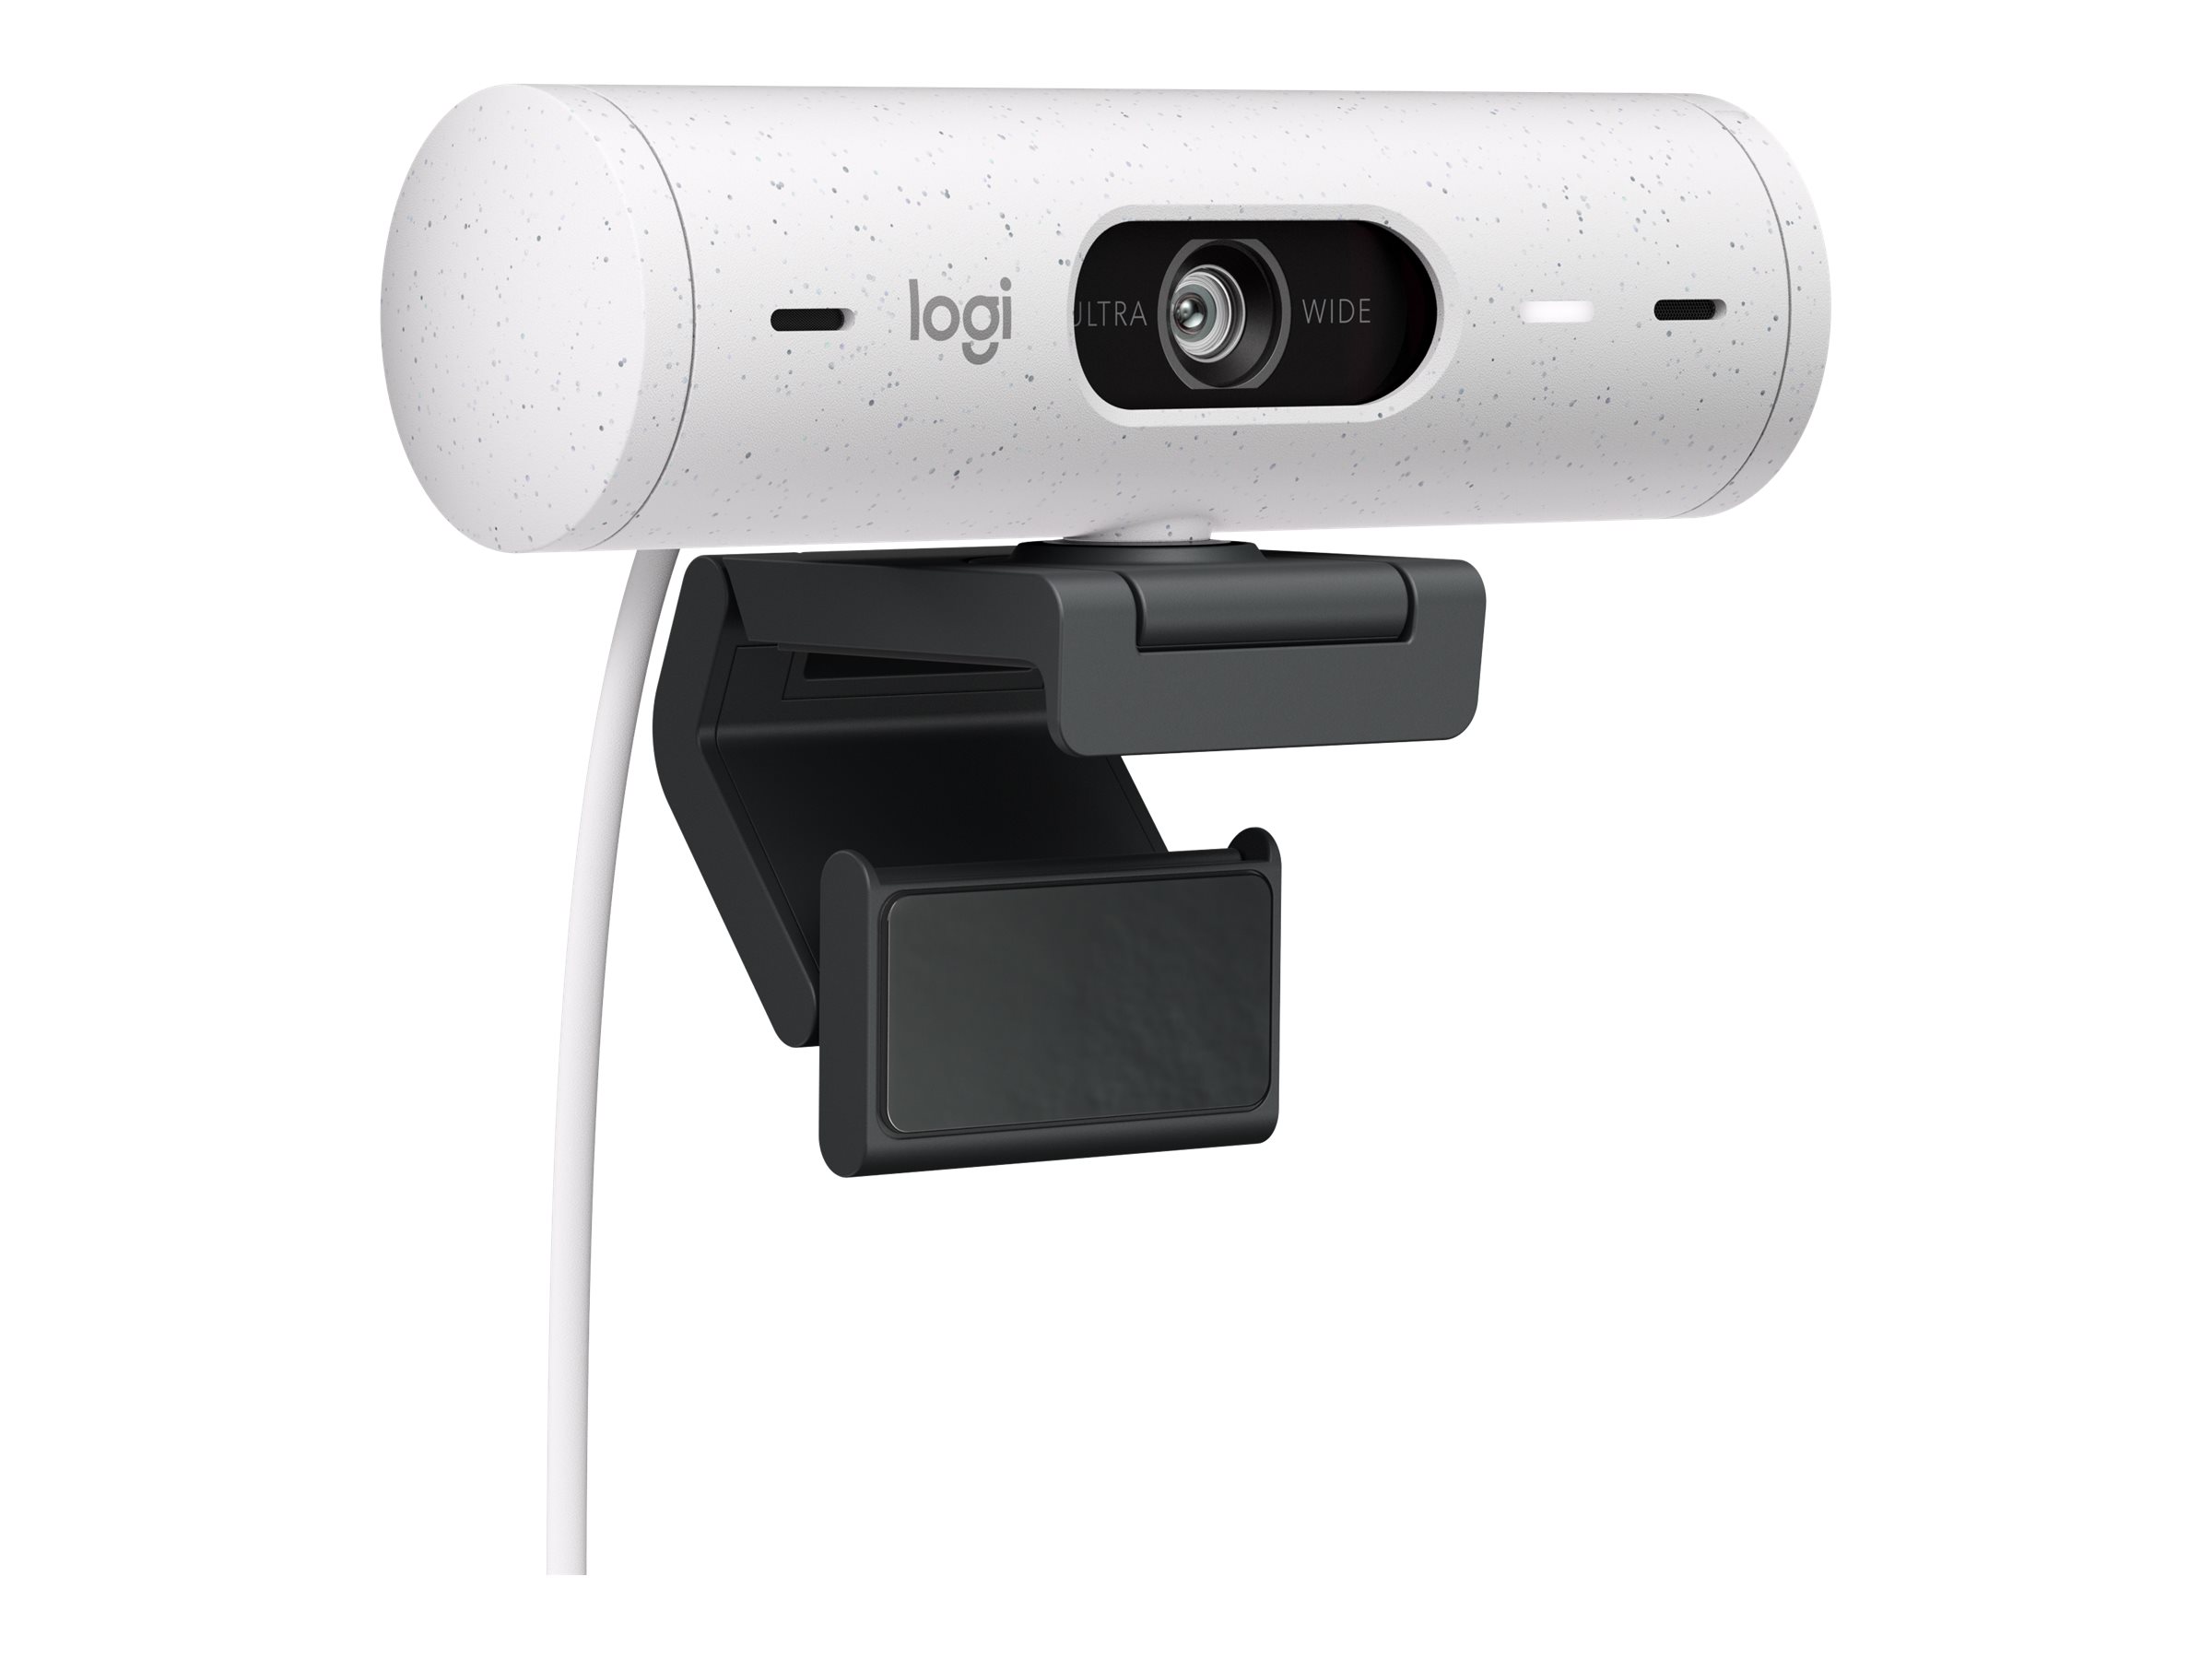 Brio 500 1080p HDR Webcam with Show Mode